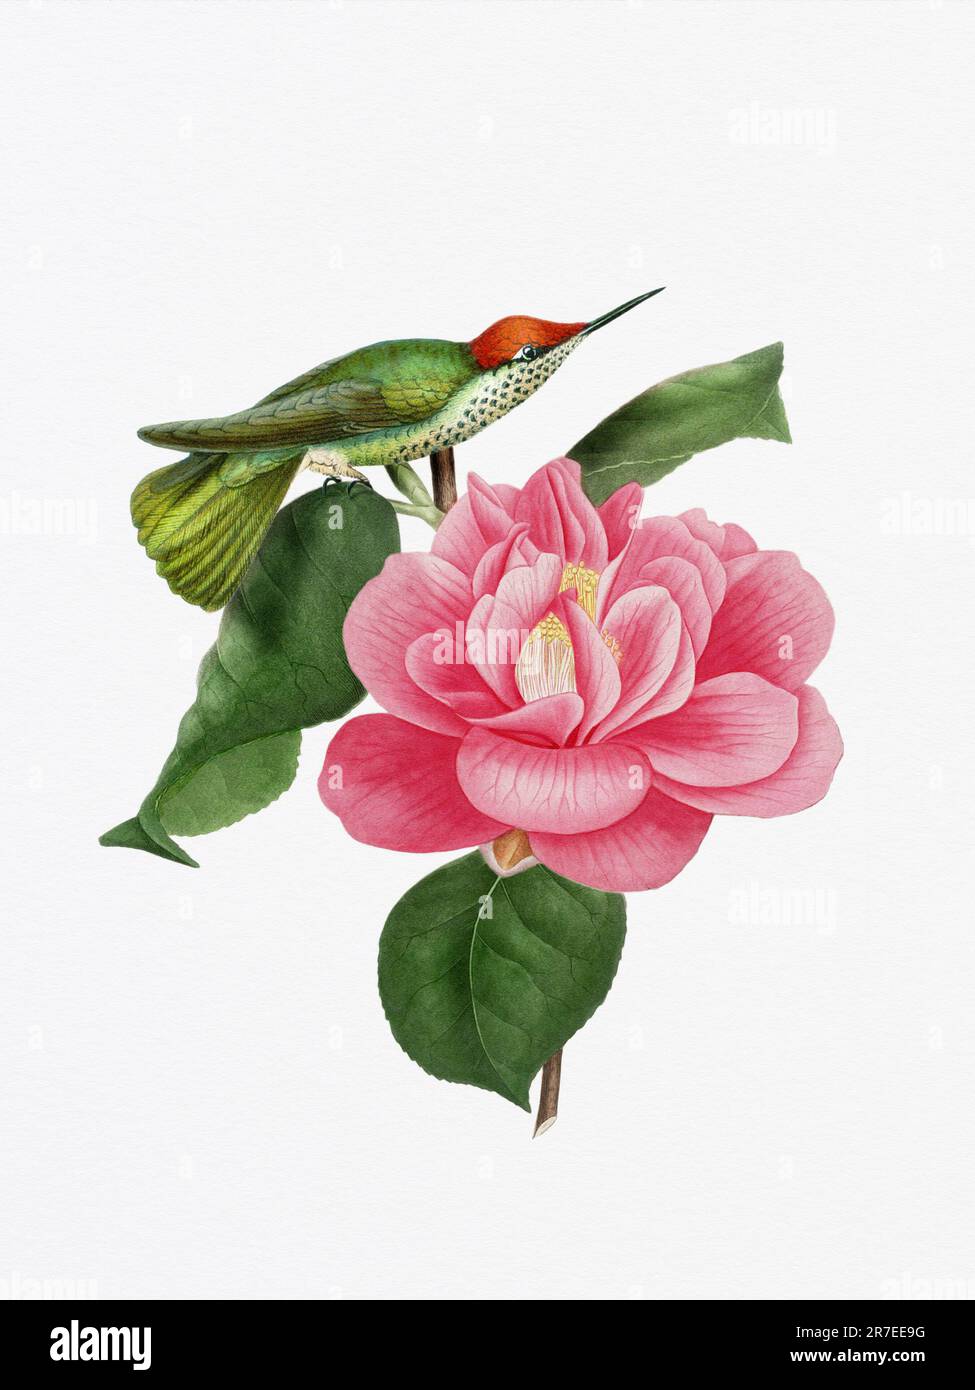 Una deliziosa illustrazione con un colibrì su un fiore di camelia, che cattura l'armonia dei colori della natura e dei momenti delicati. Foto Stock